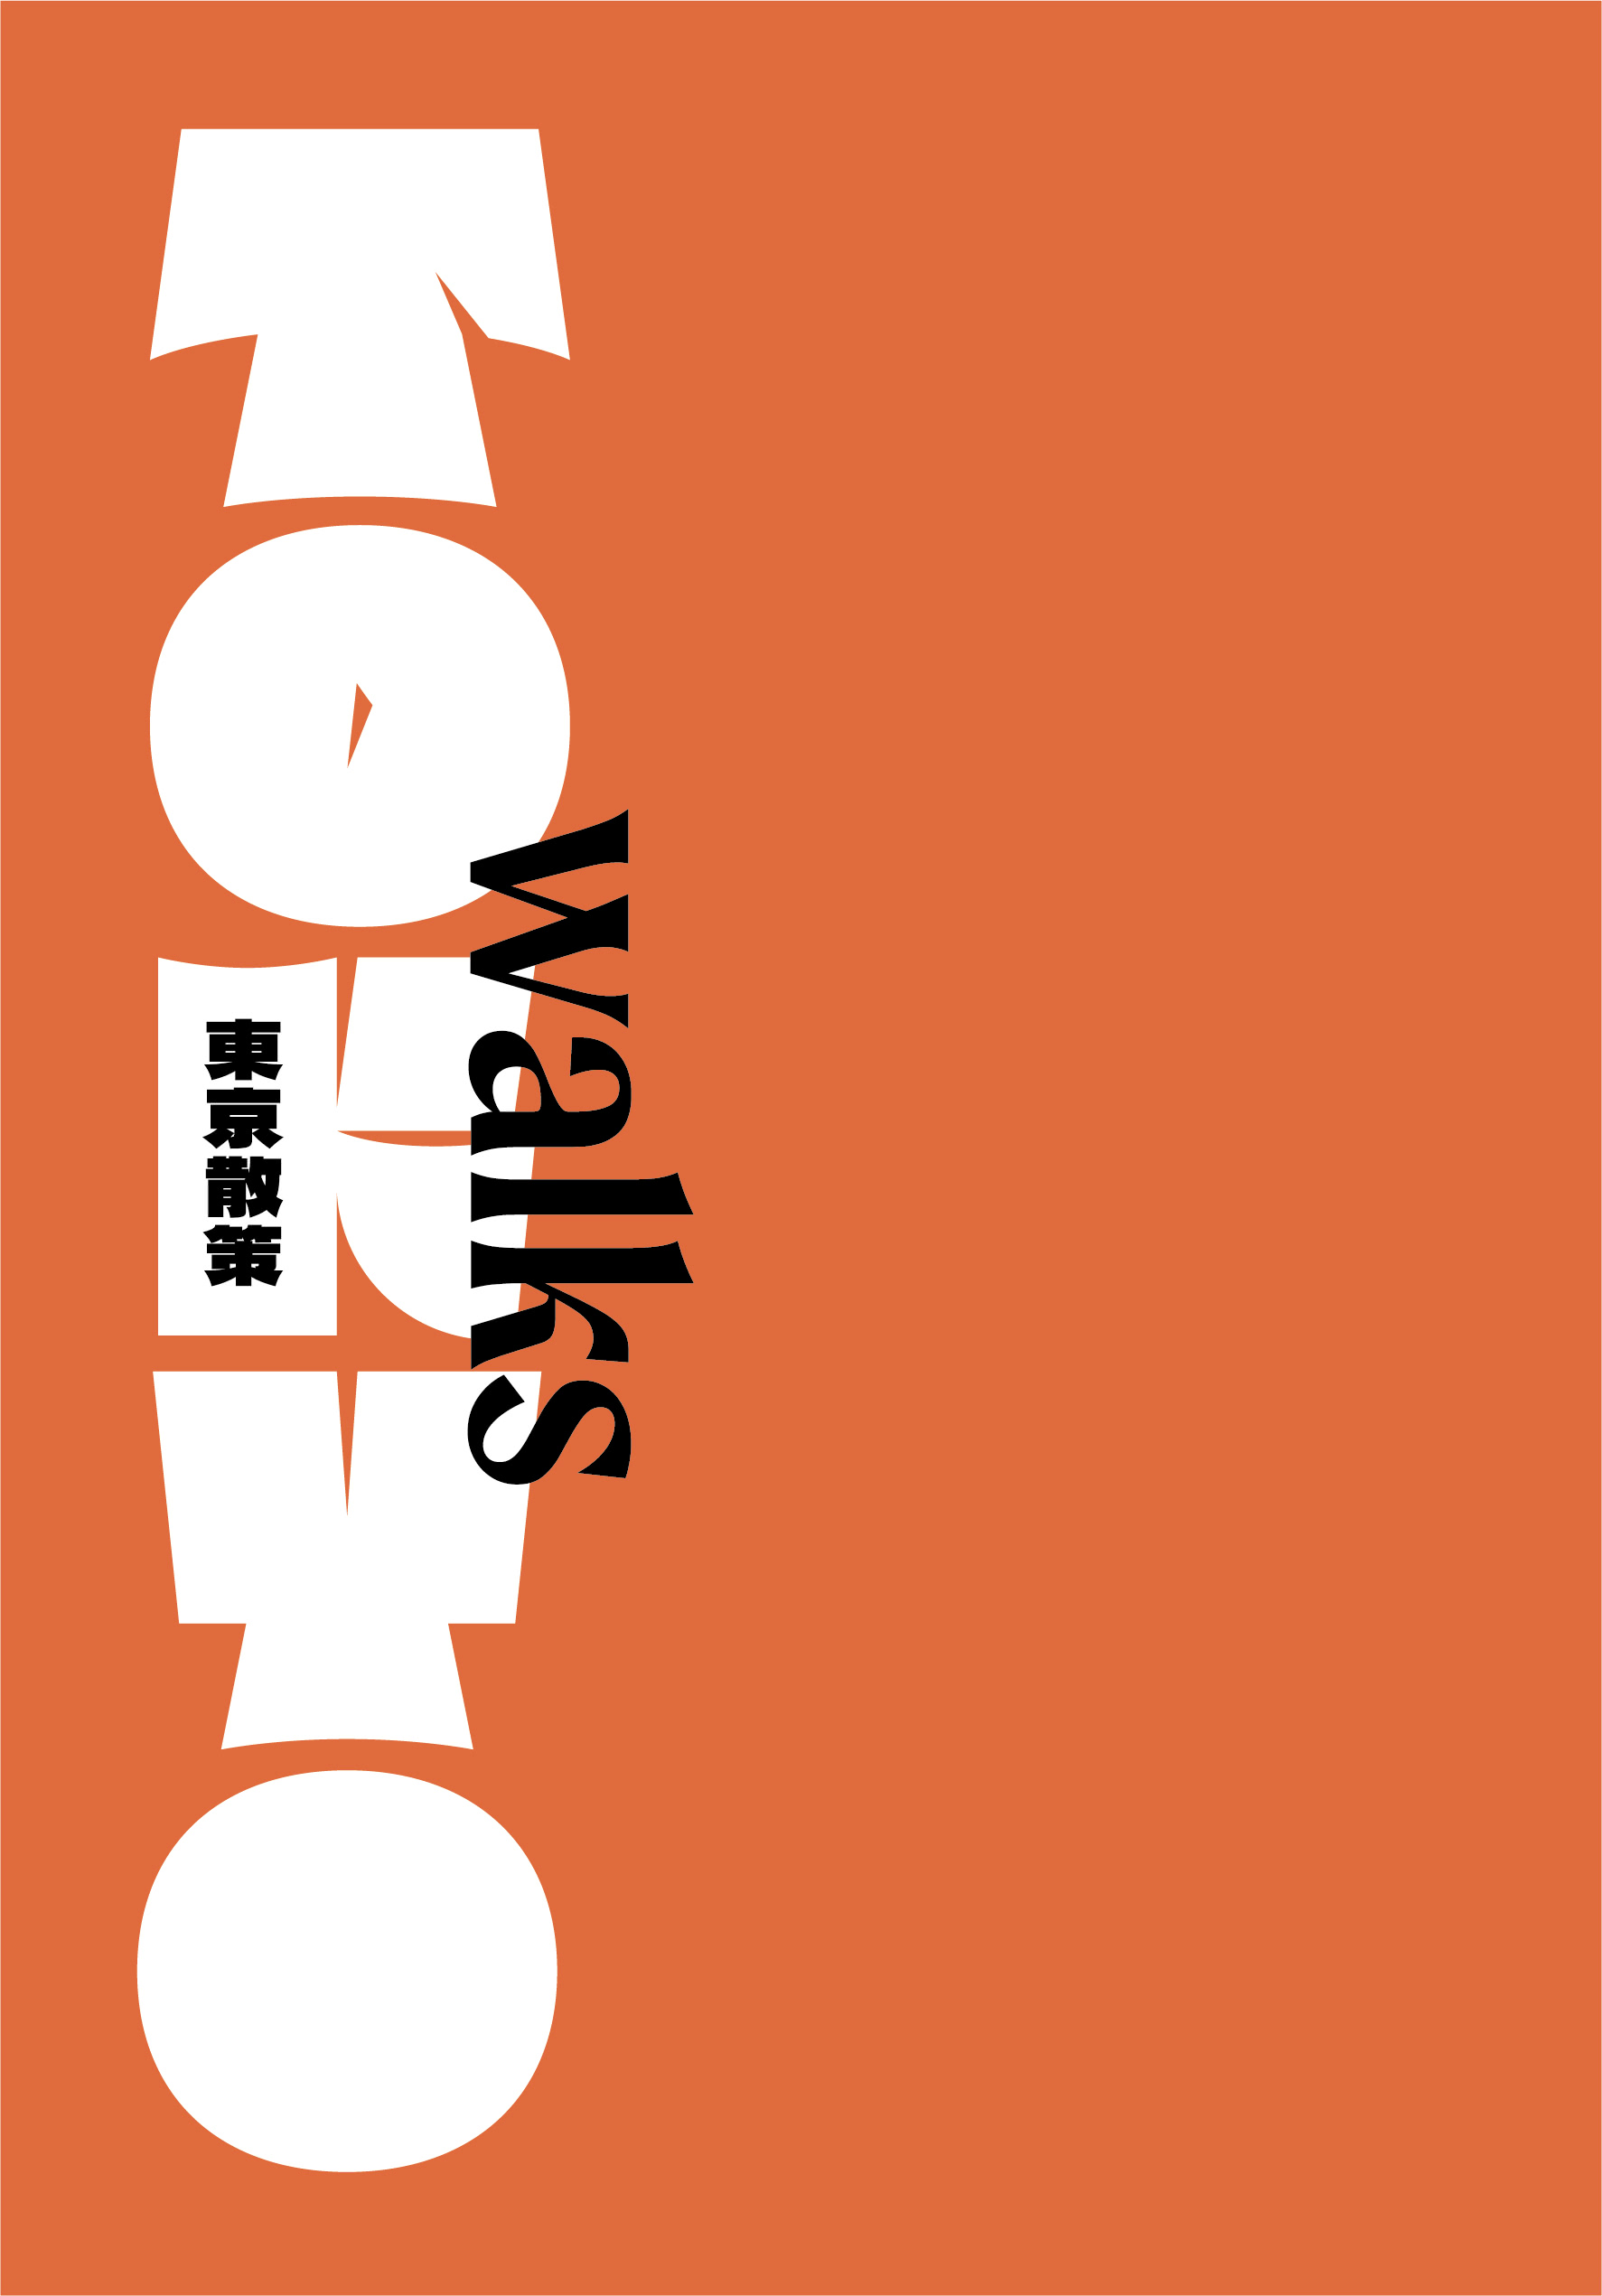 東京再發現100＋：吳東龍的設計東京品味入門指南【隨書附『東京散策TOKYO WALKS地圖』別冊】